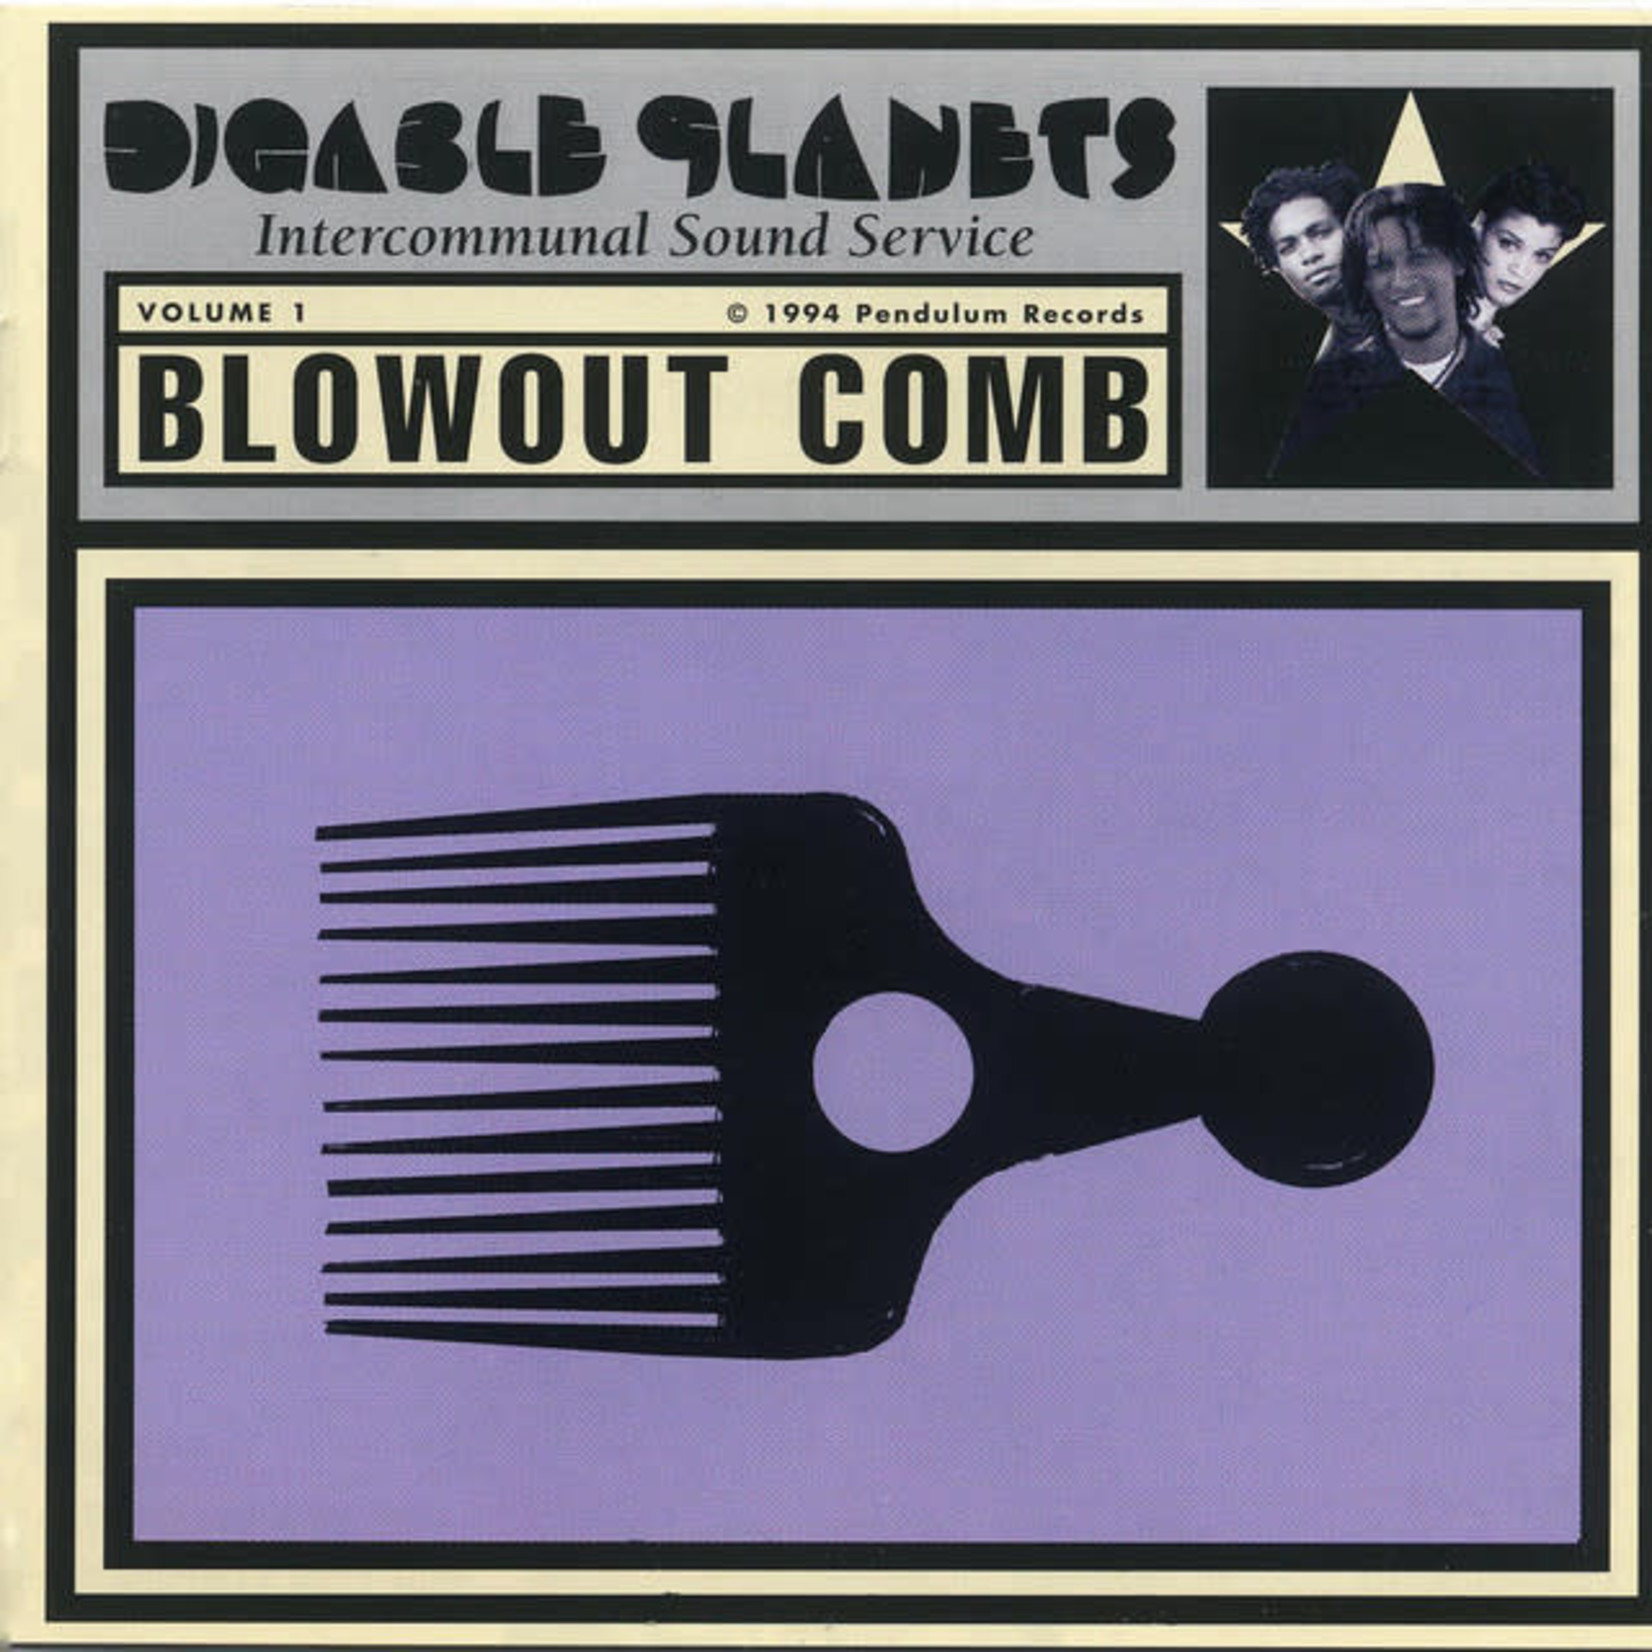 [New] Digable Planets - Blowout Comb (2LP, multicolour vinyl)